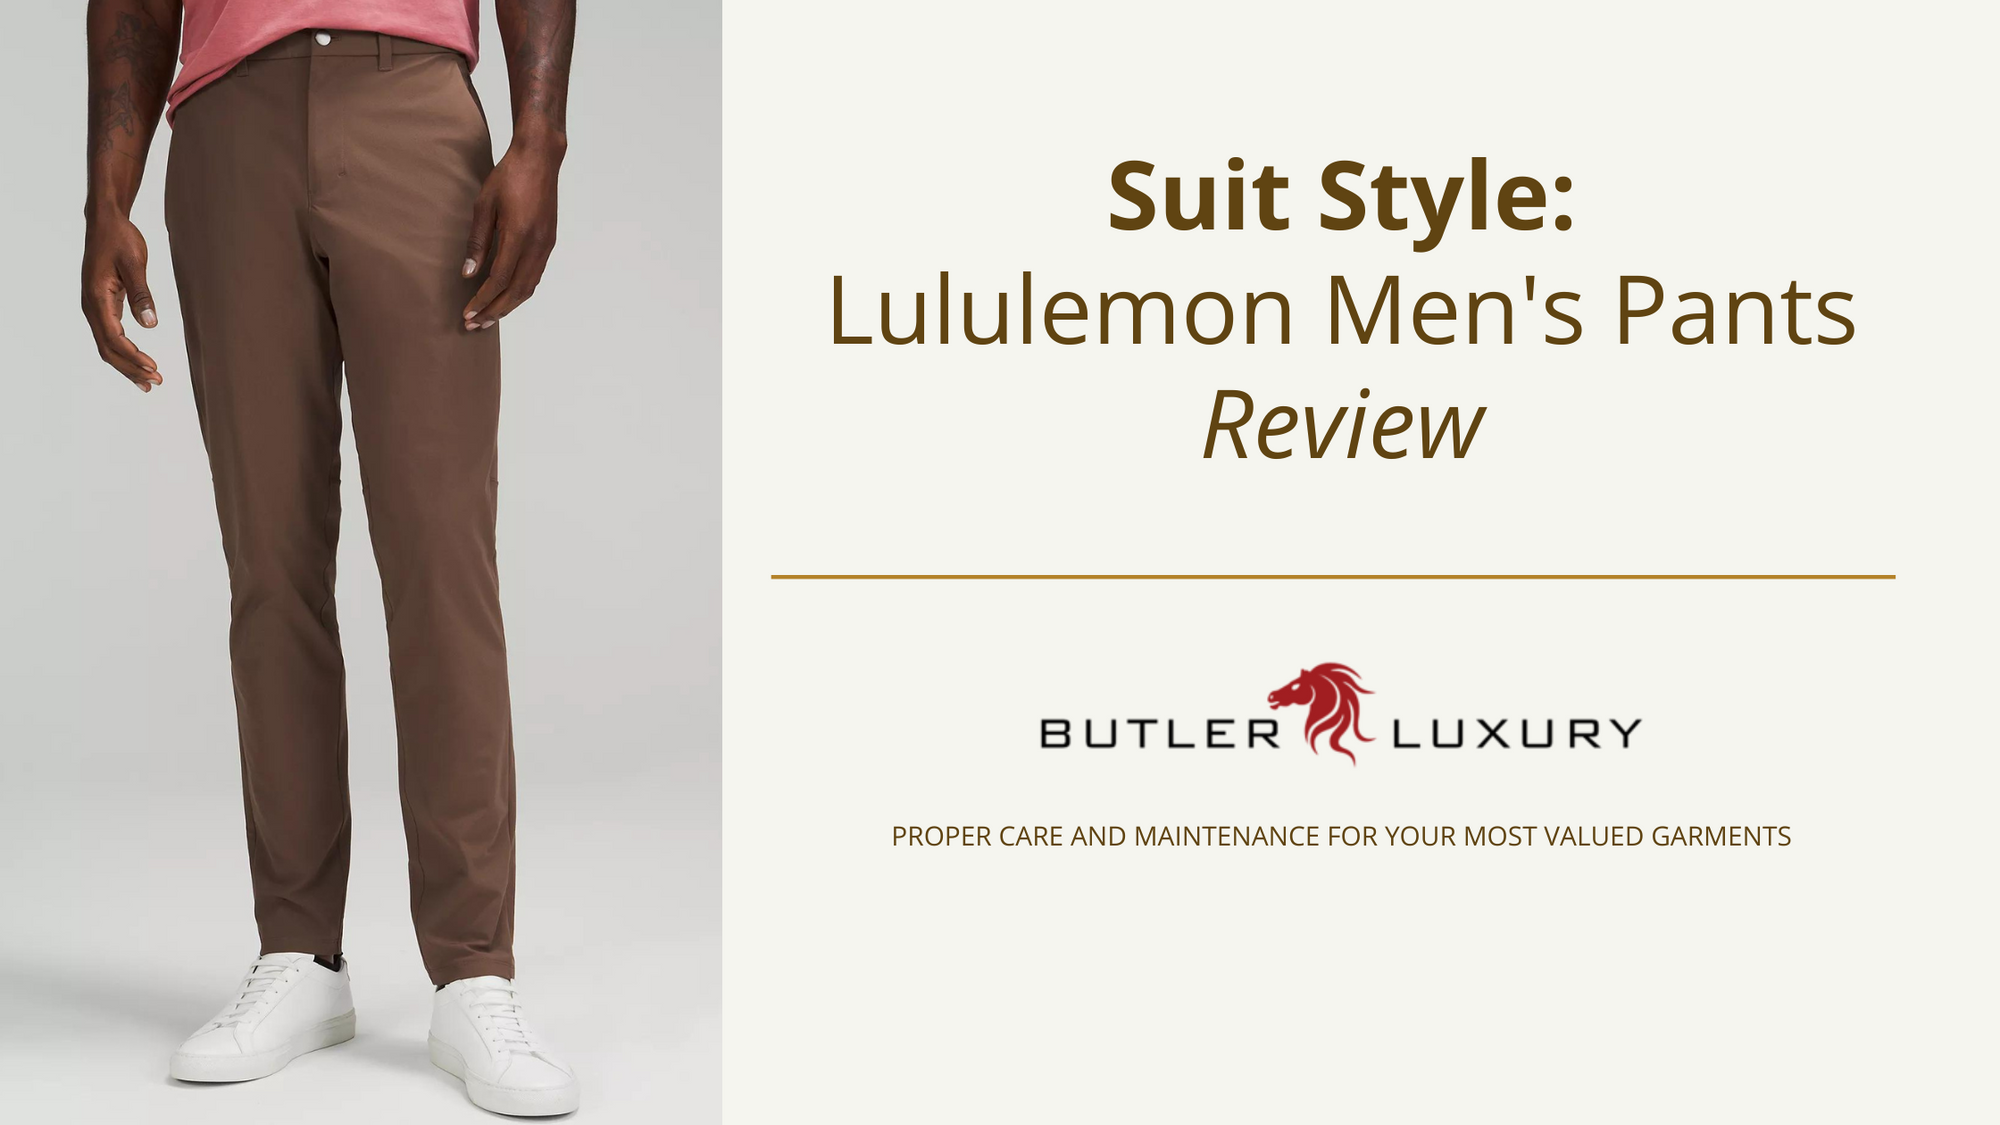 Suit Style: Lululemon Men's Pants Review